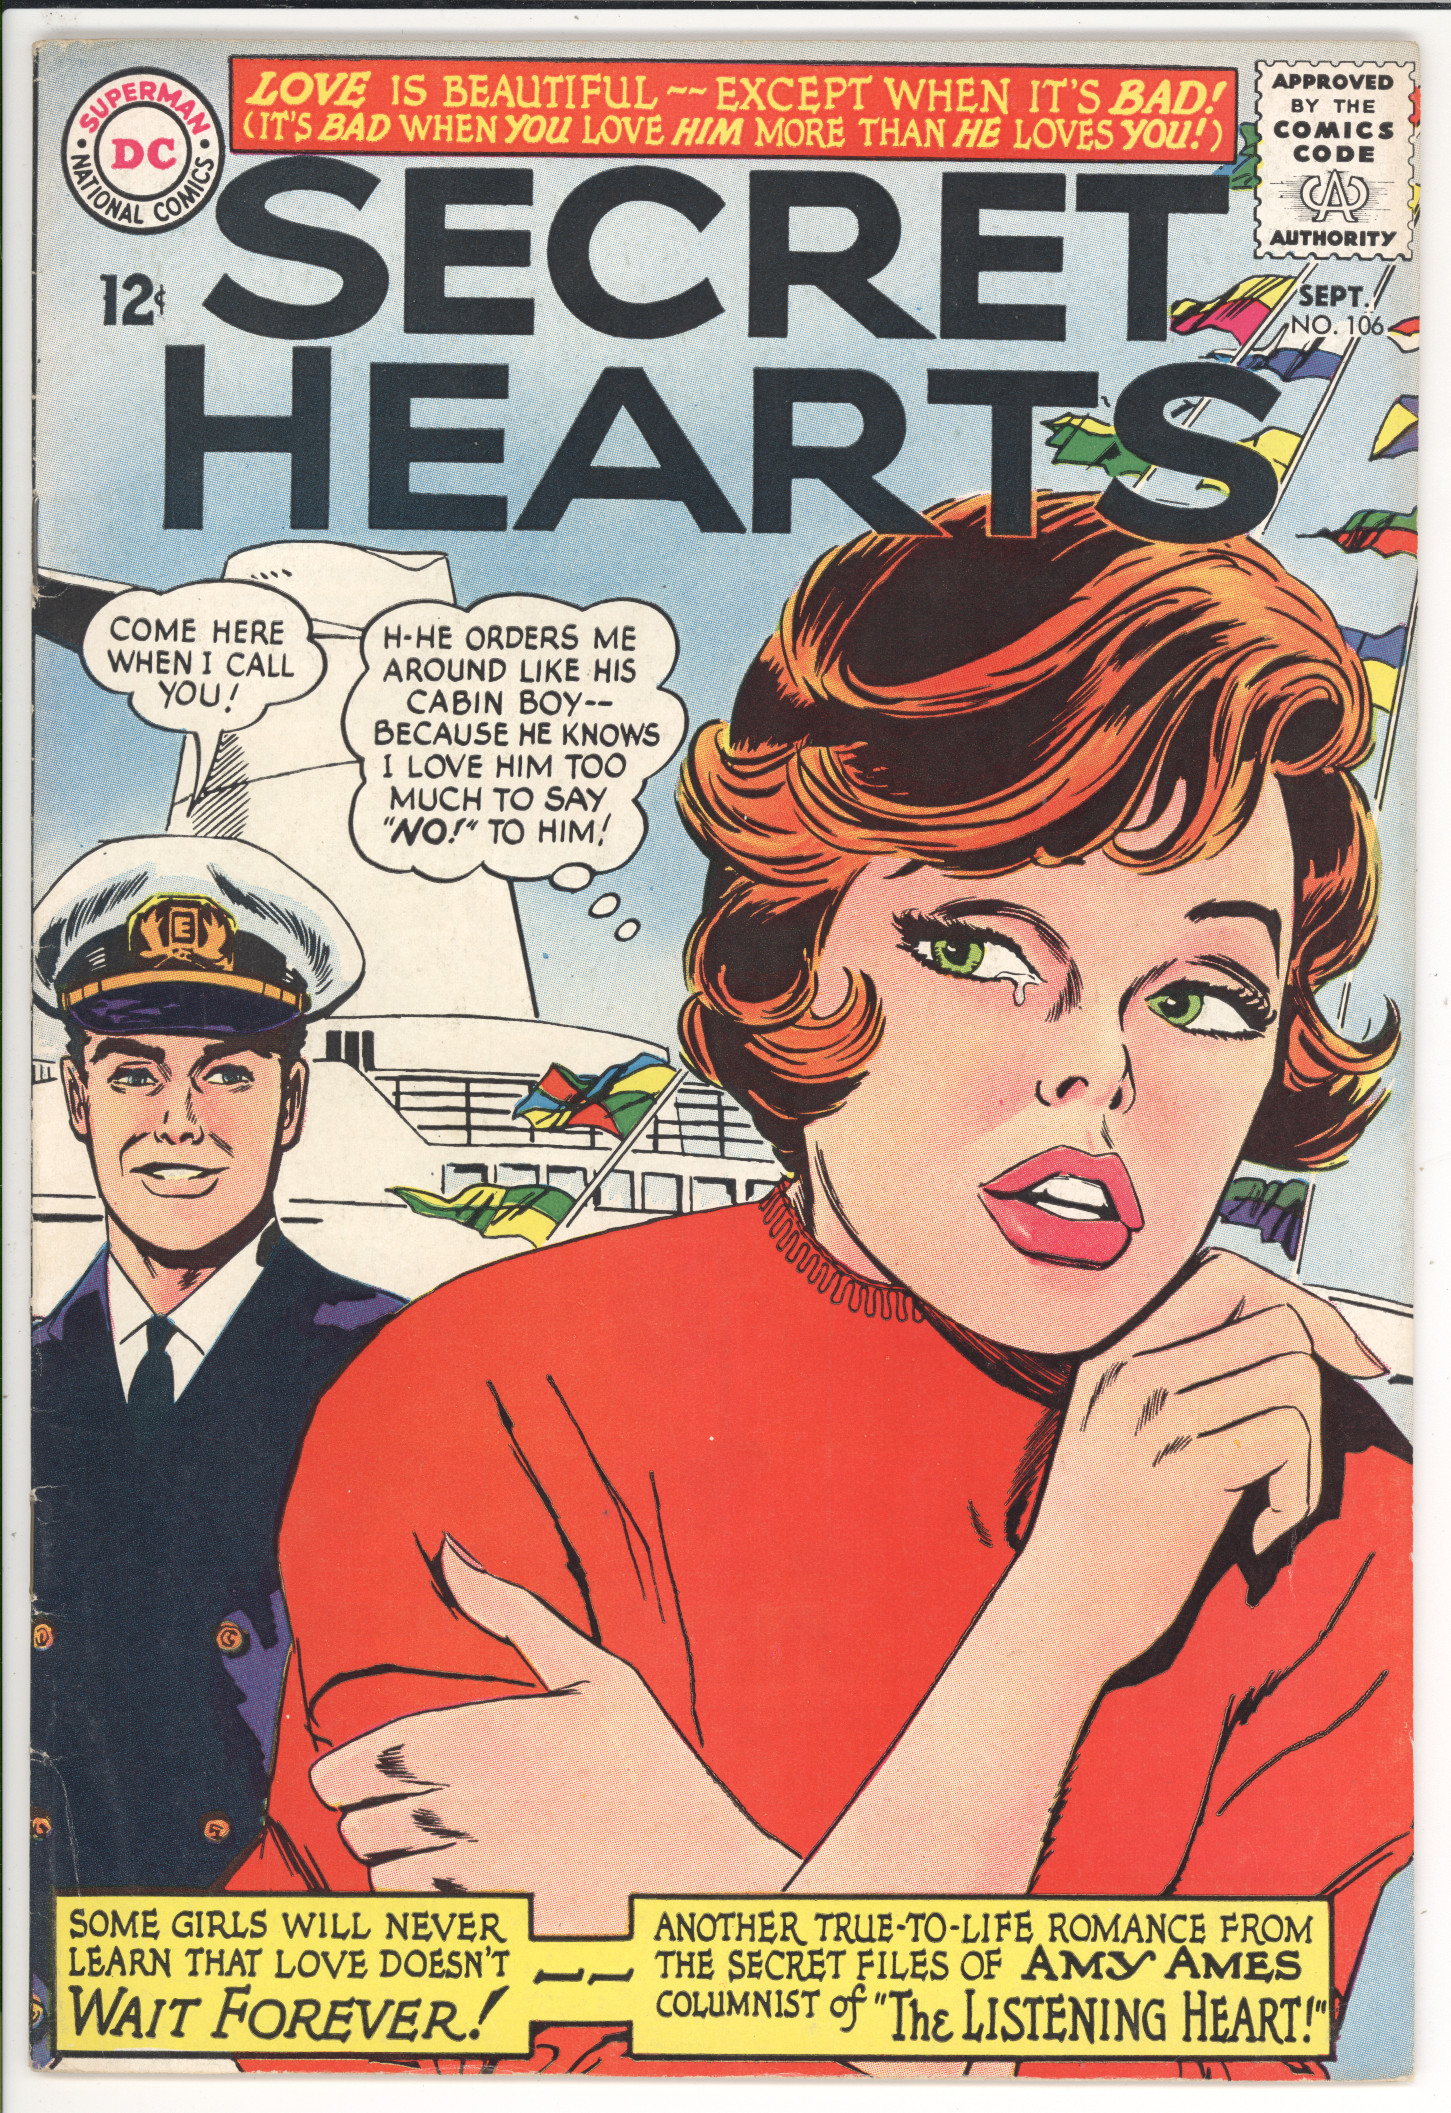 Secret Hearts #106 front